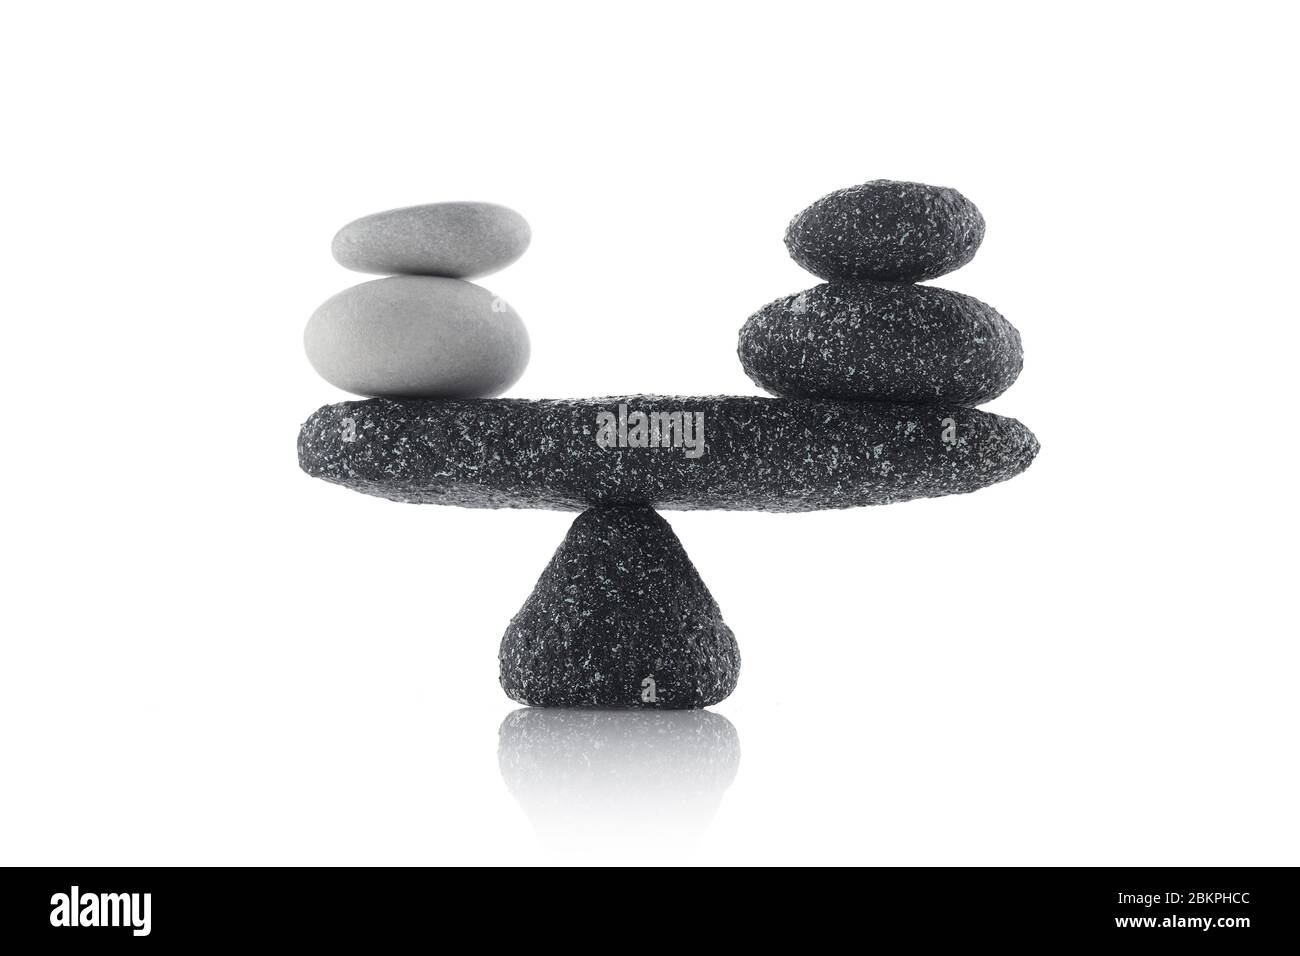 Balancing black and white stones isolated on white background Stock Photo